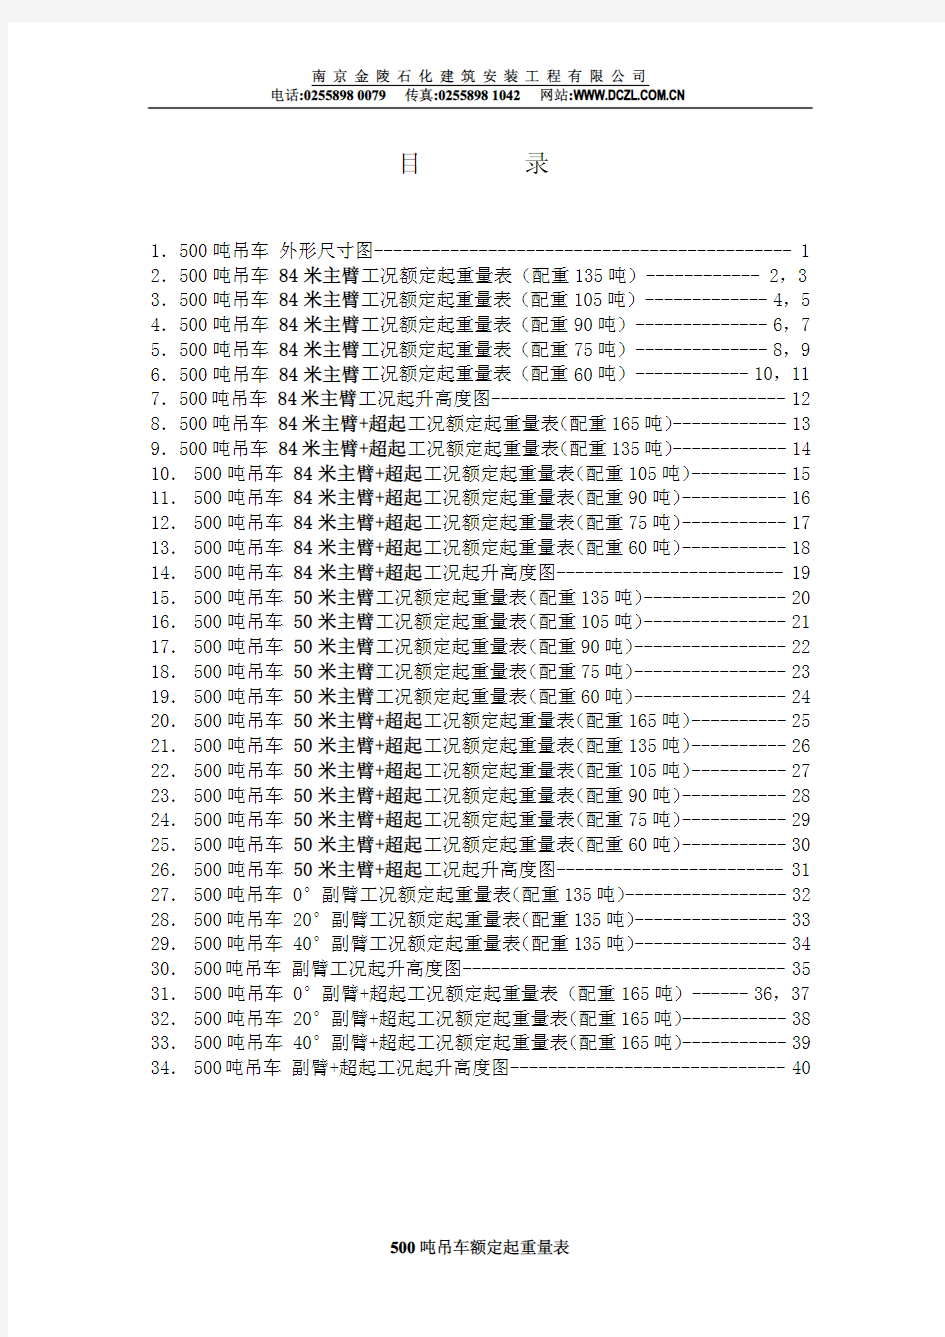 500t吊车性能表(中文版)